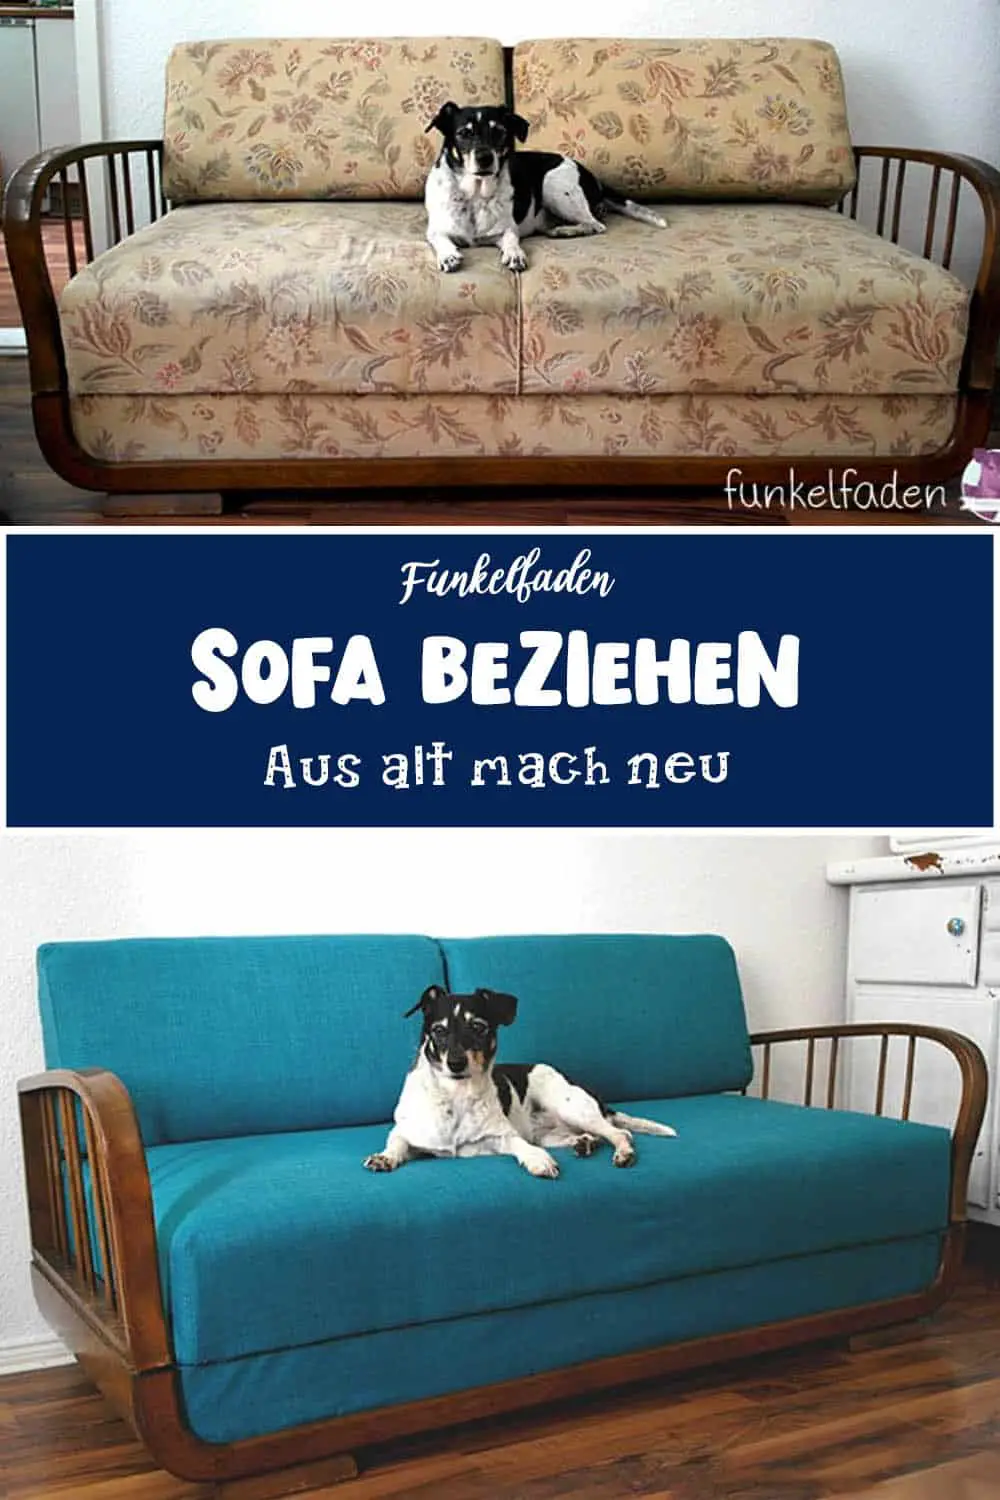 Sofa beziehen aus alt mach neu